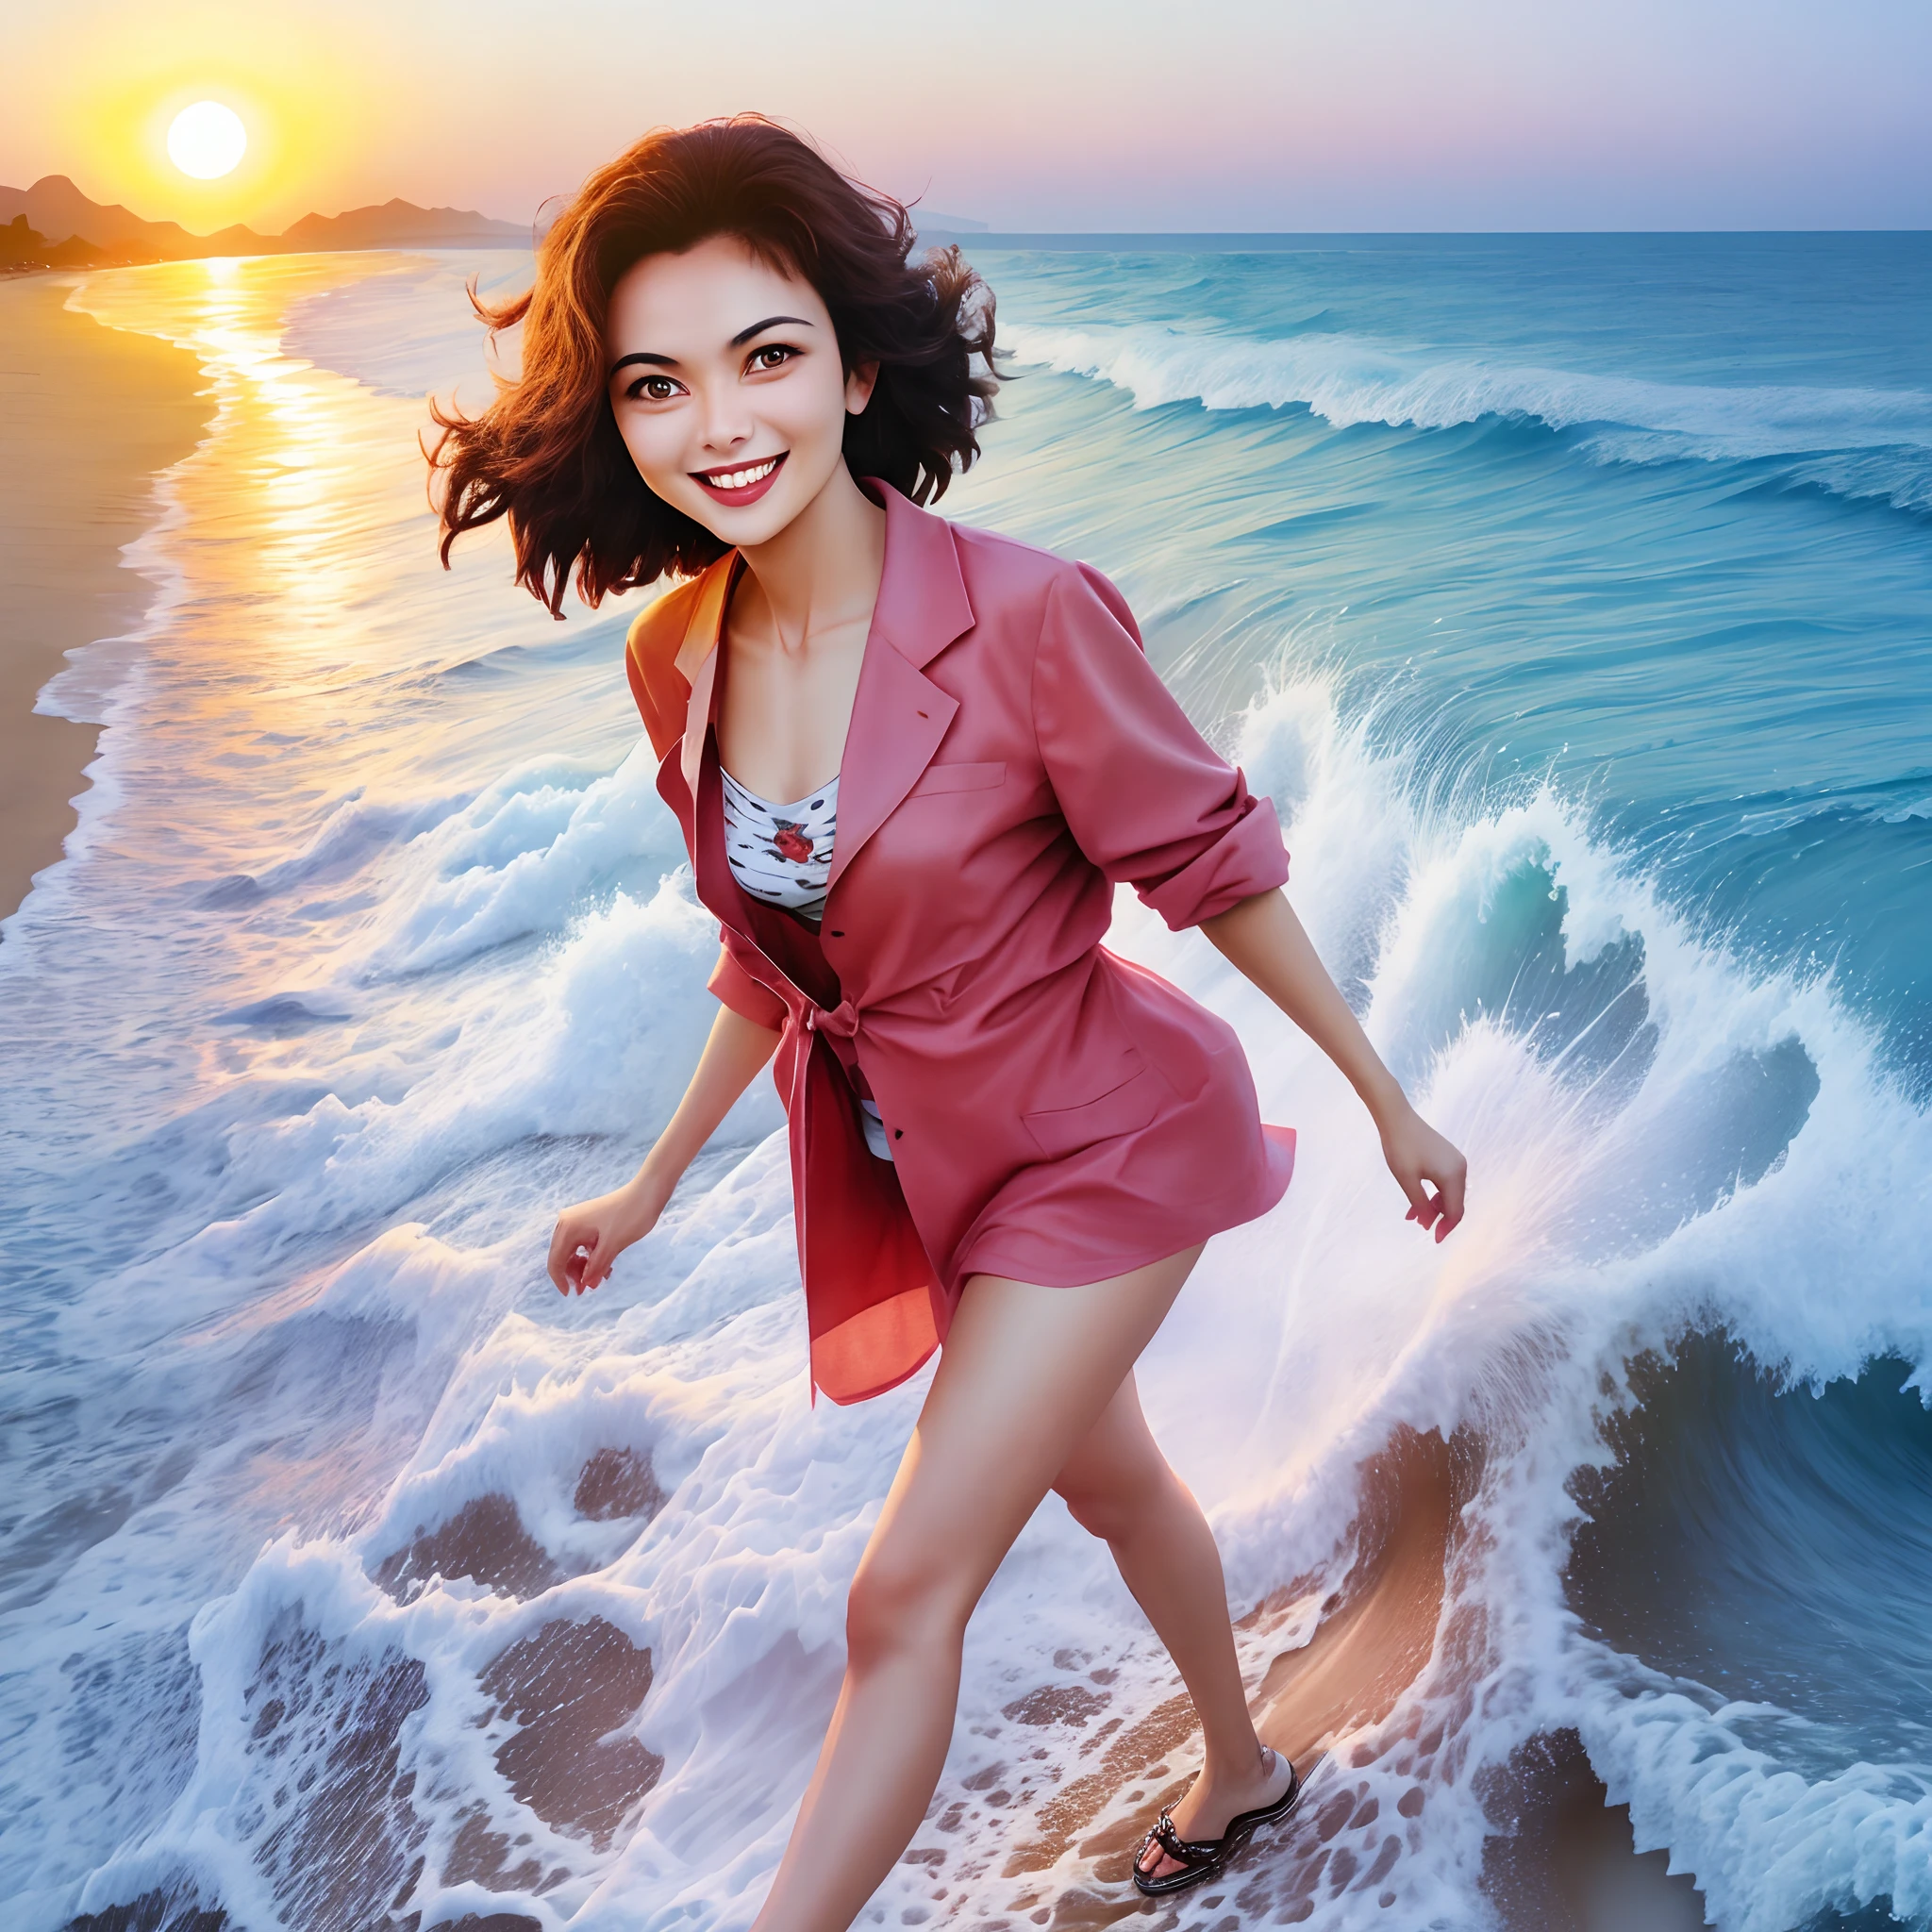 해질녘 해변을 걷고 웃는 여자의 현실적인 이미지